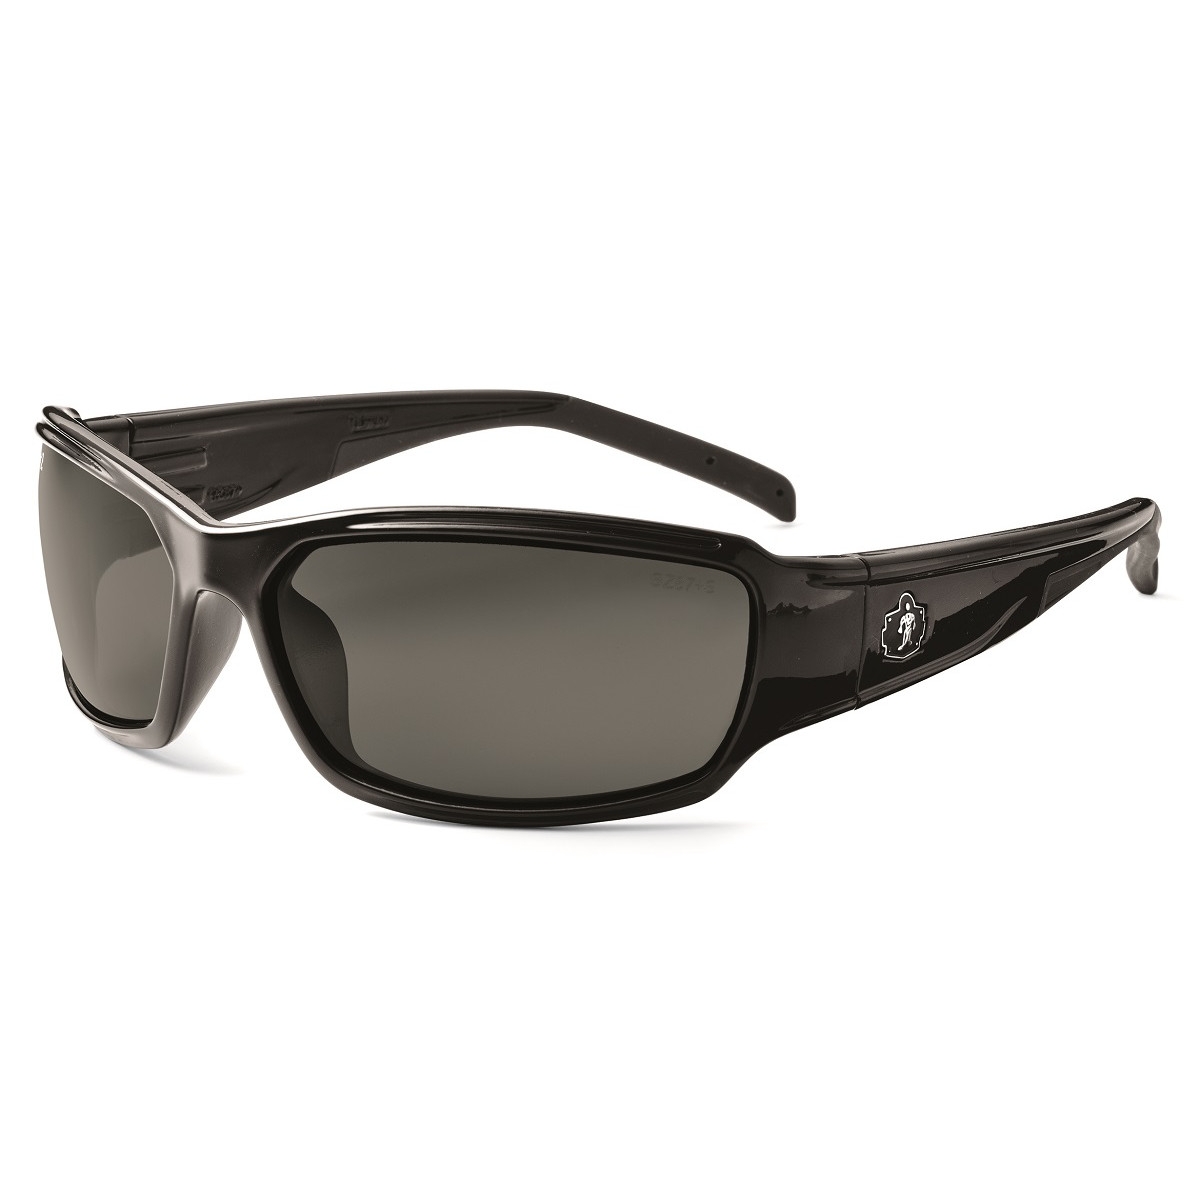 Ergodyne Thor 51030 Safety Glasses - Black Frame - Smoke Lens ...